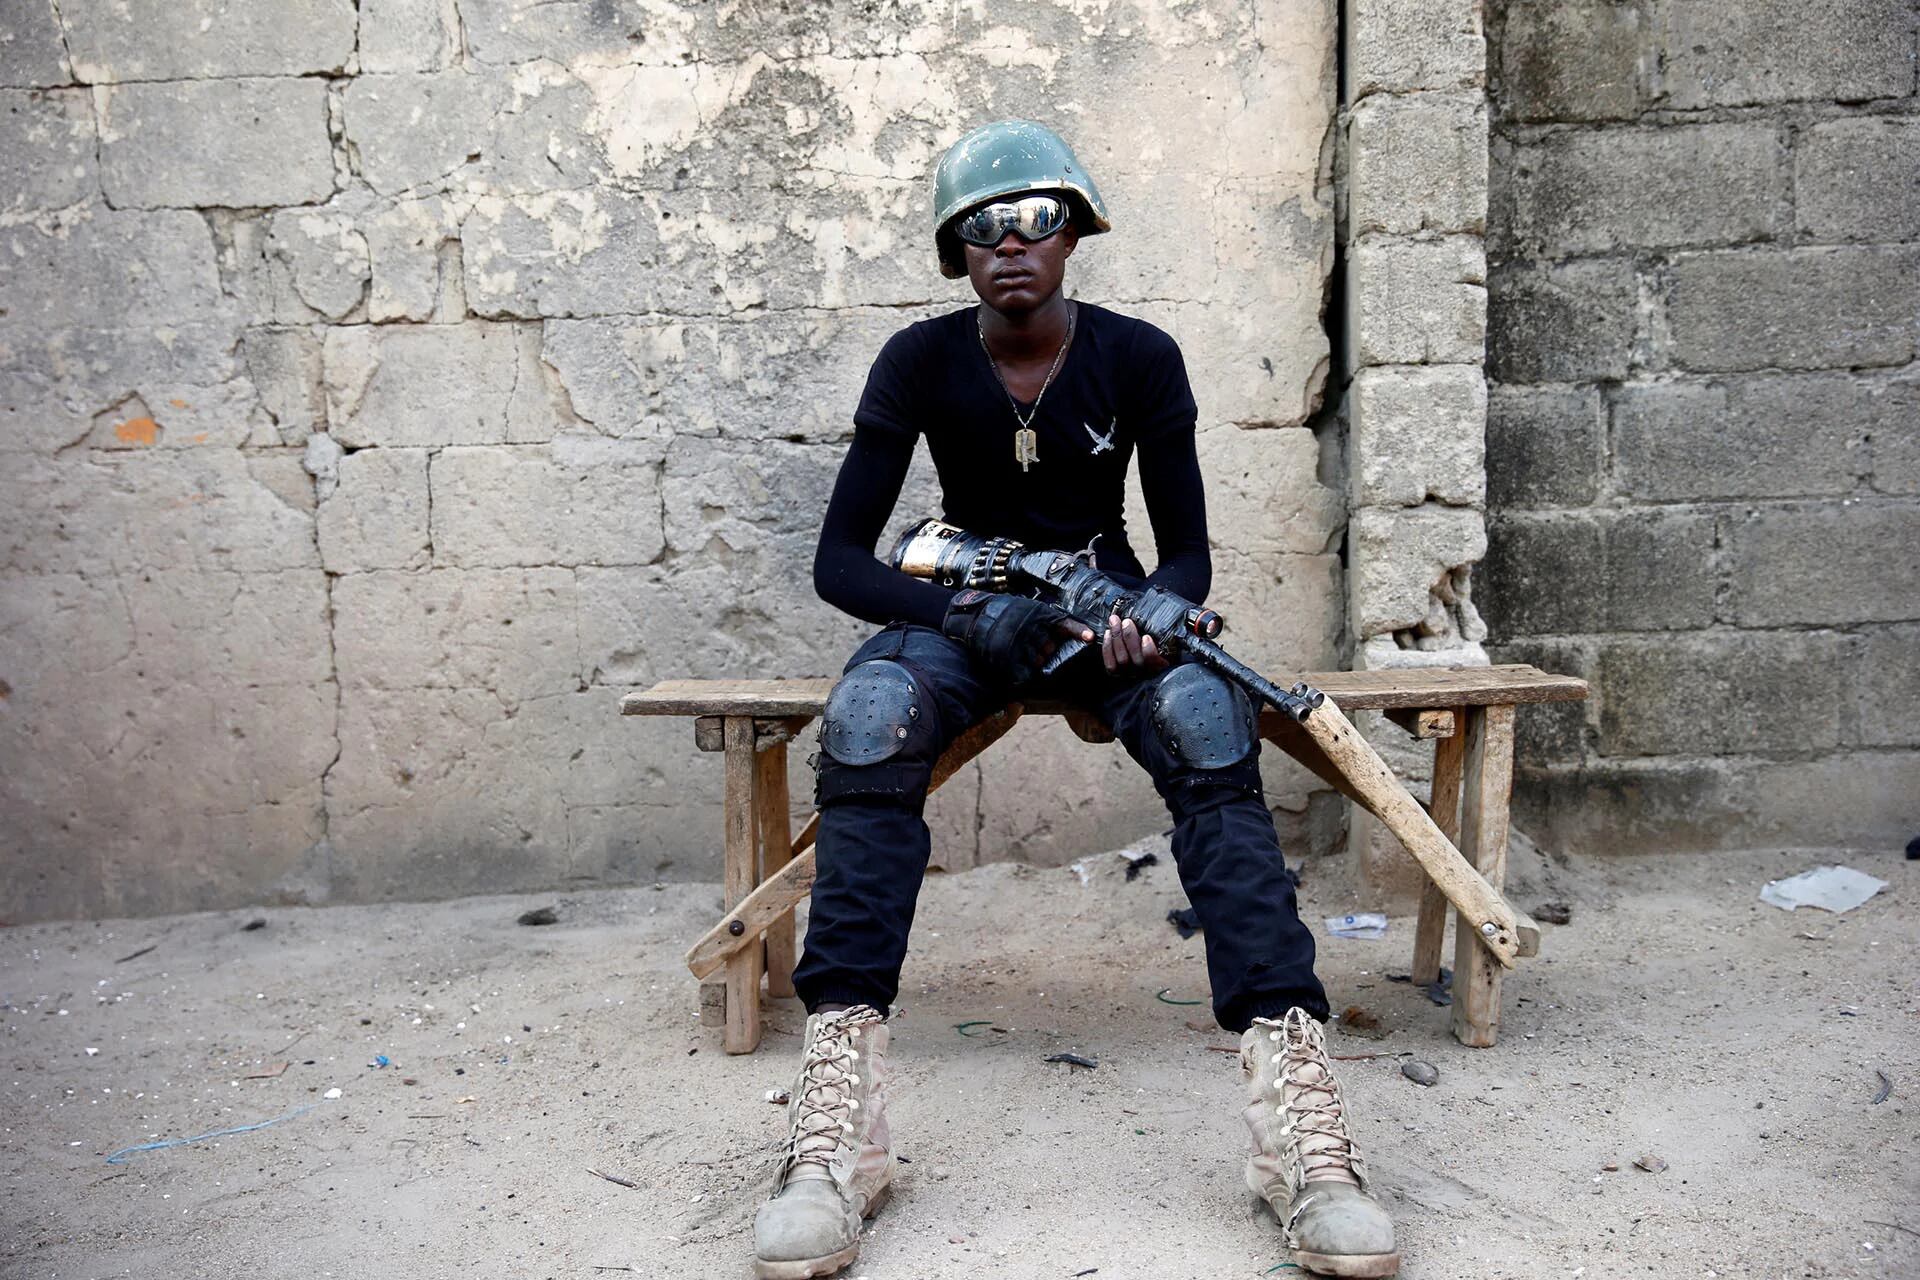 Adamu Mohammed, de 23 años, posa para una fotografía en un recinto de la ciudad de Maiduguri, al norte de Nigeria. El joven es miembro del grupo de milicias locales conocido como CJTF